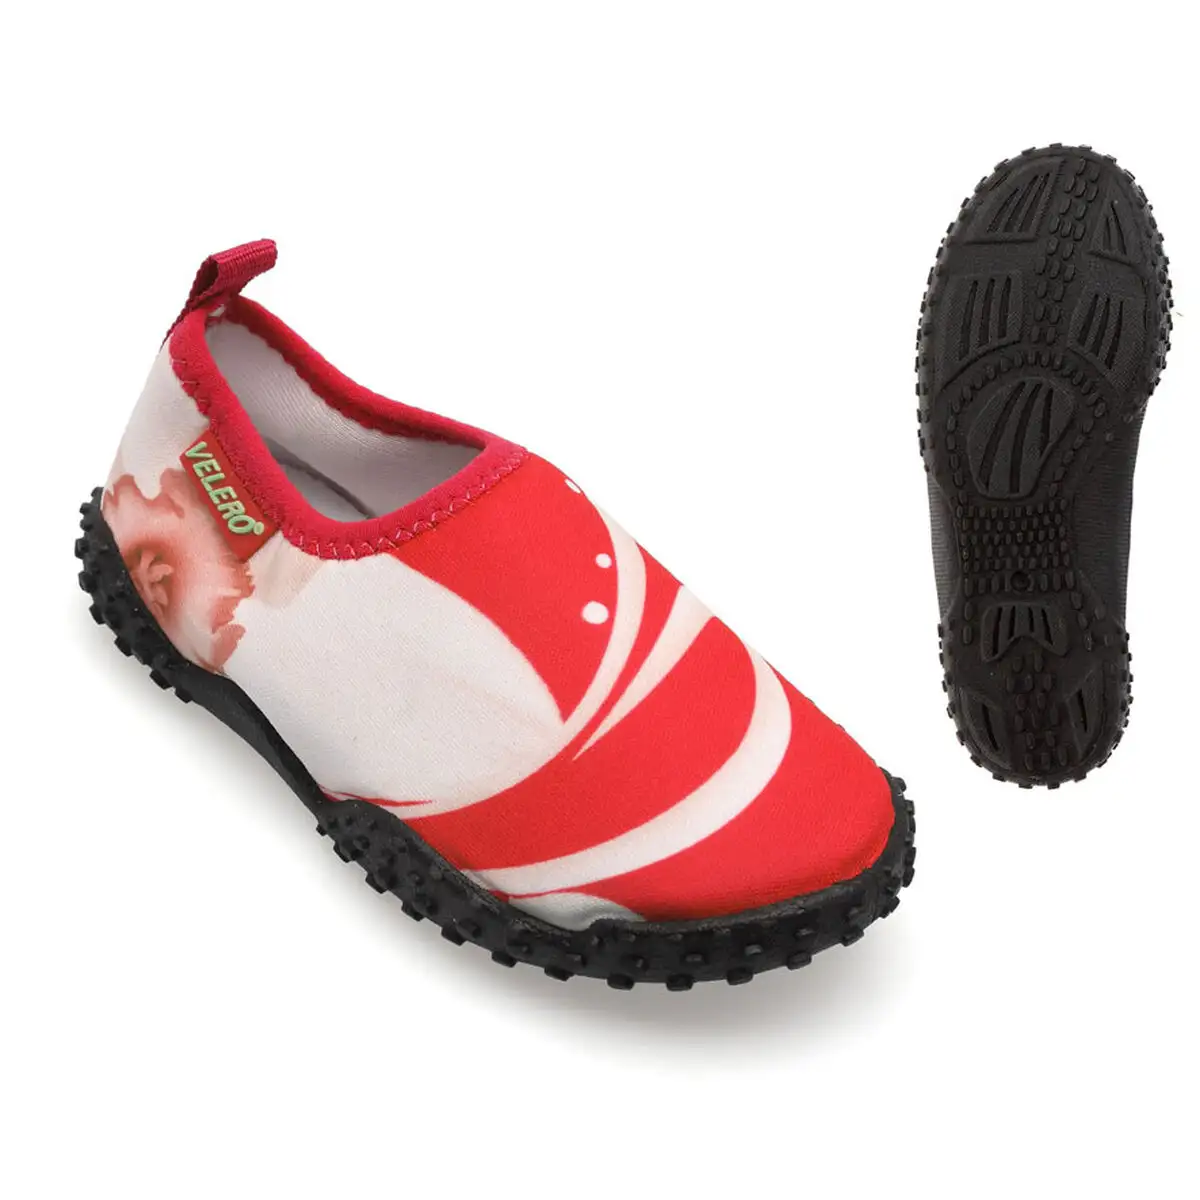 Chaussures aquatiques pour enfants lines rouge_2810. DIAYTAR SENEGAL - Là où la Découverte est au Rendez-vous. Plongez dans notre catalogue et trouvez des articles qui éveilleront votre curiosité et élargiront vos horizons.